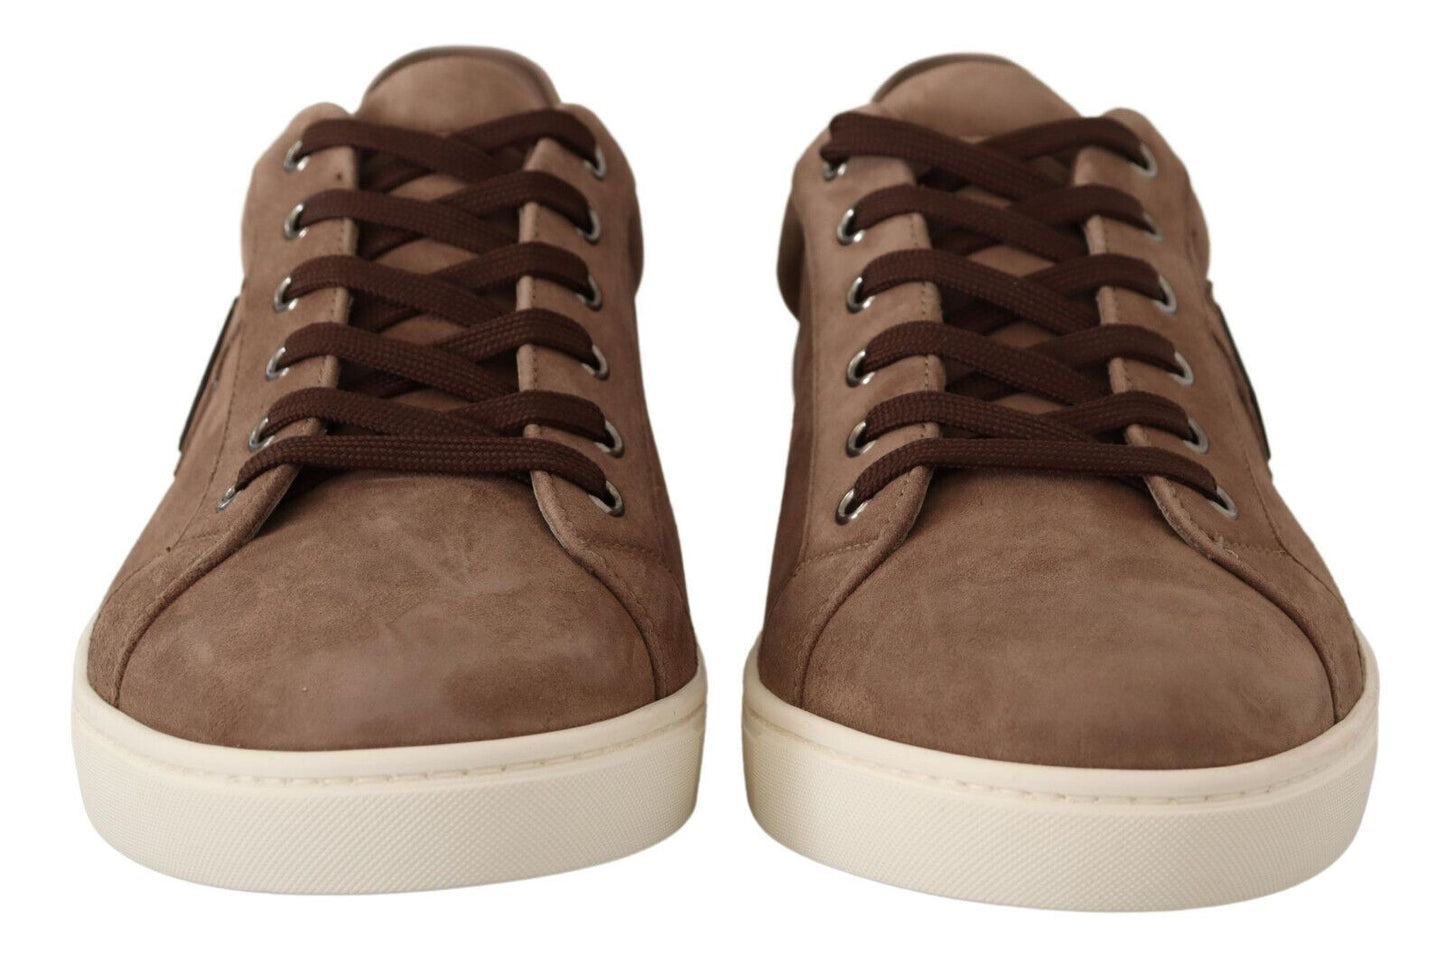 Dolce & Gabbana Brown Suede en cuir Sneakers Chaussures